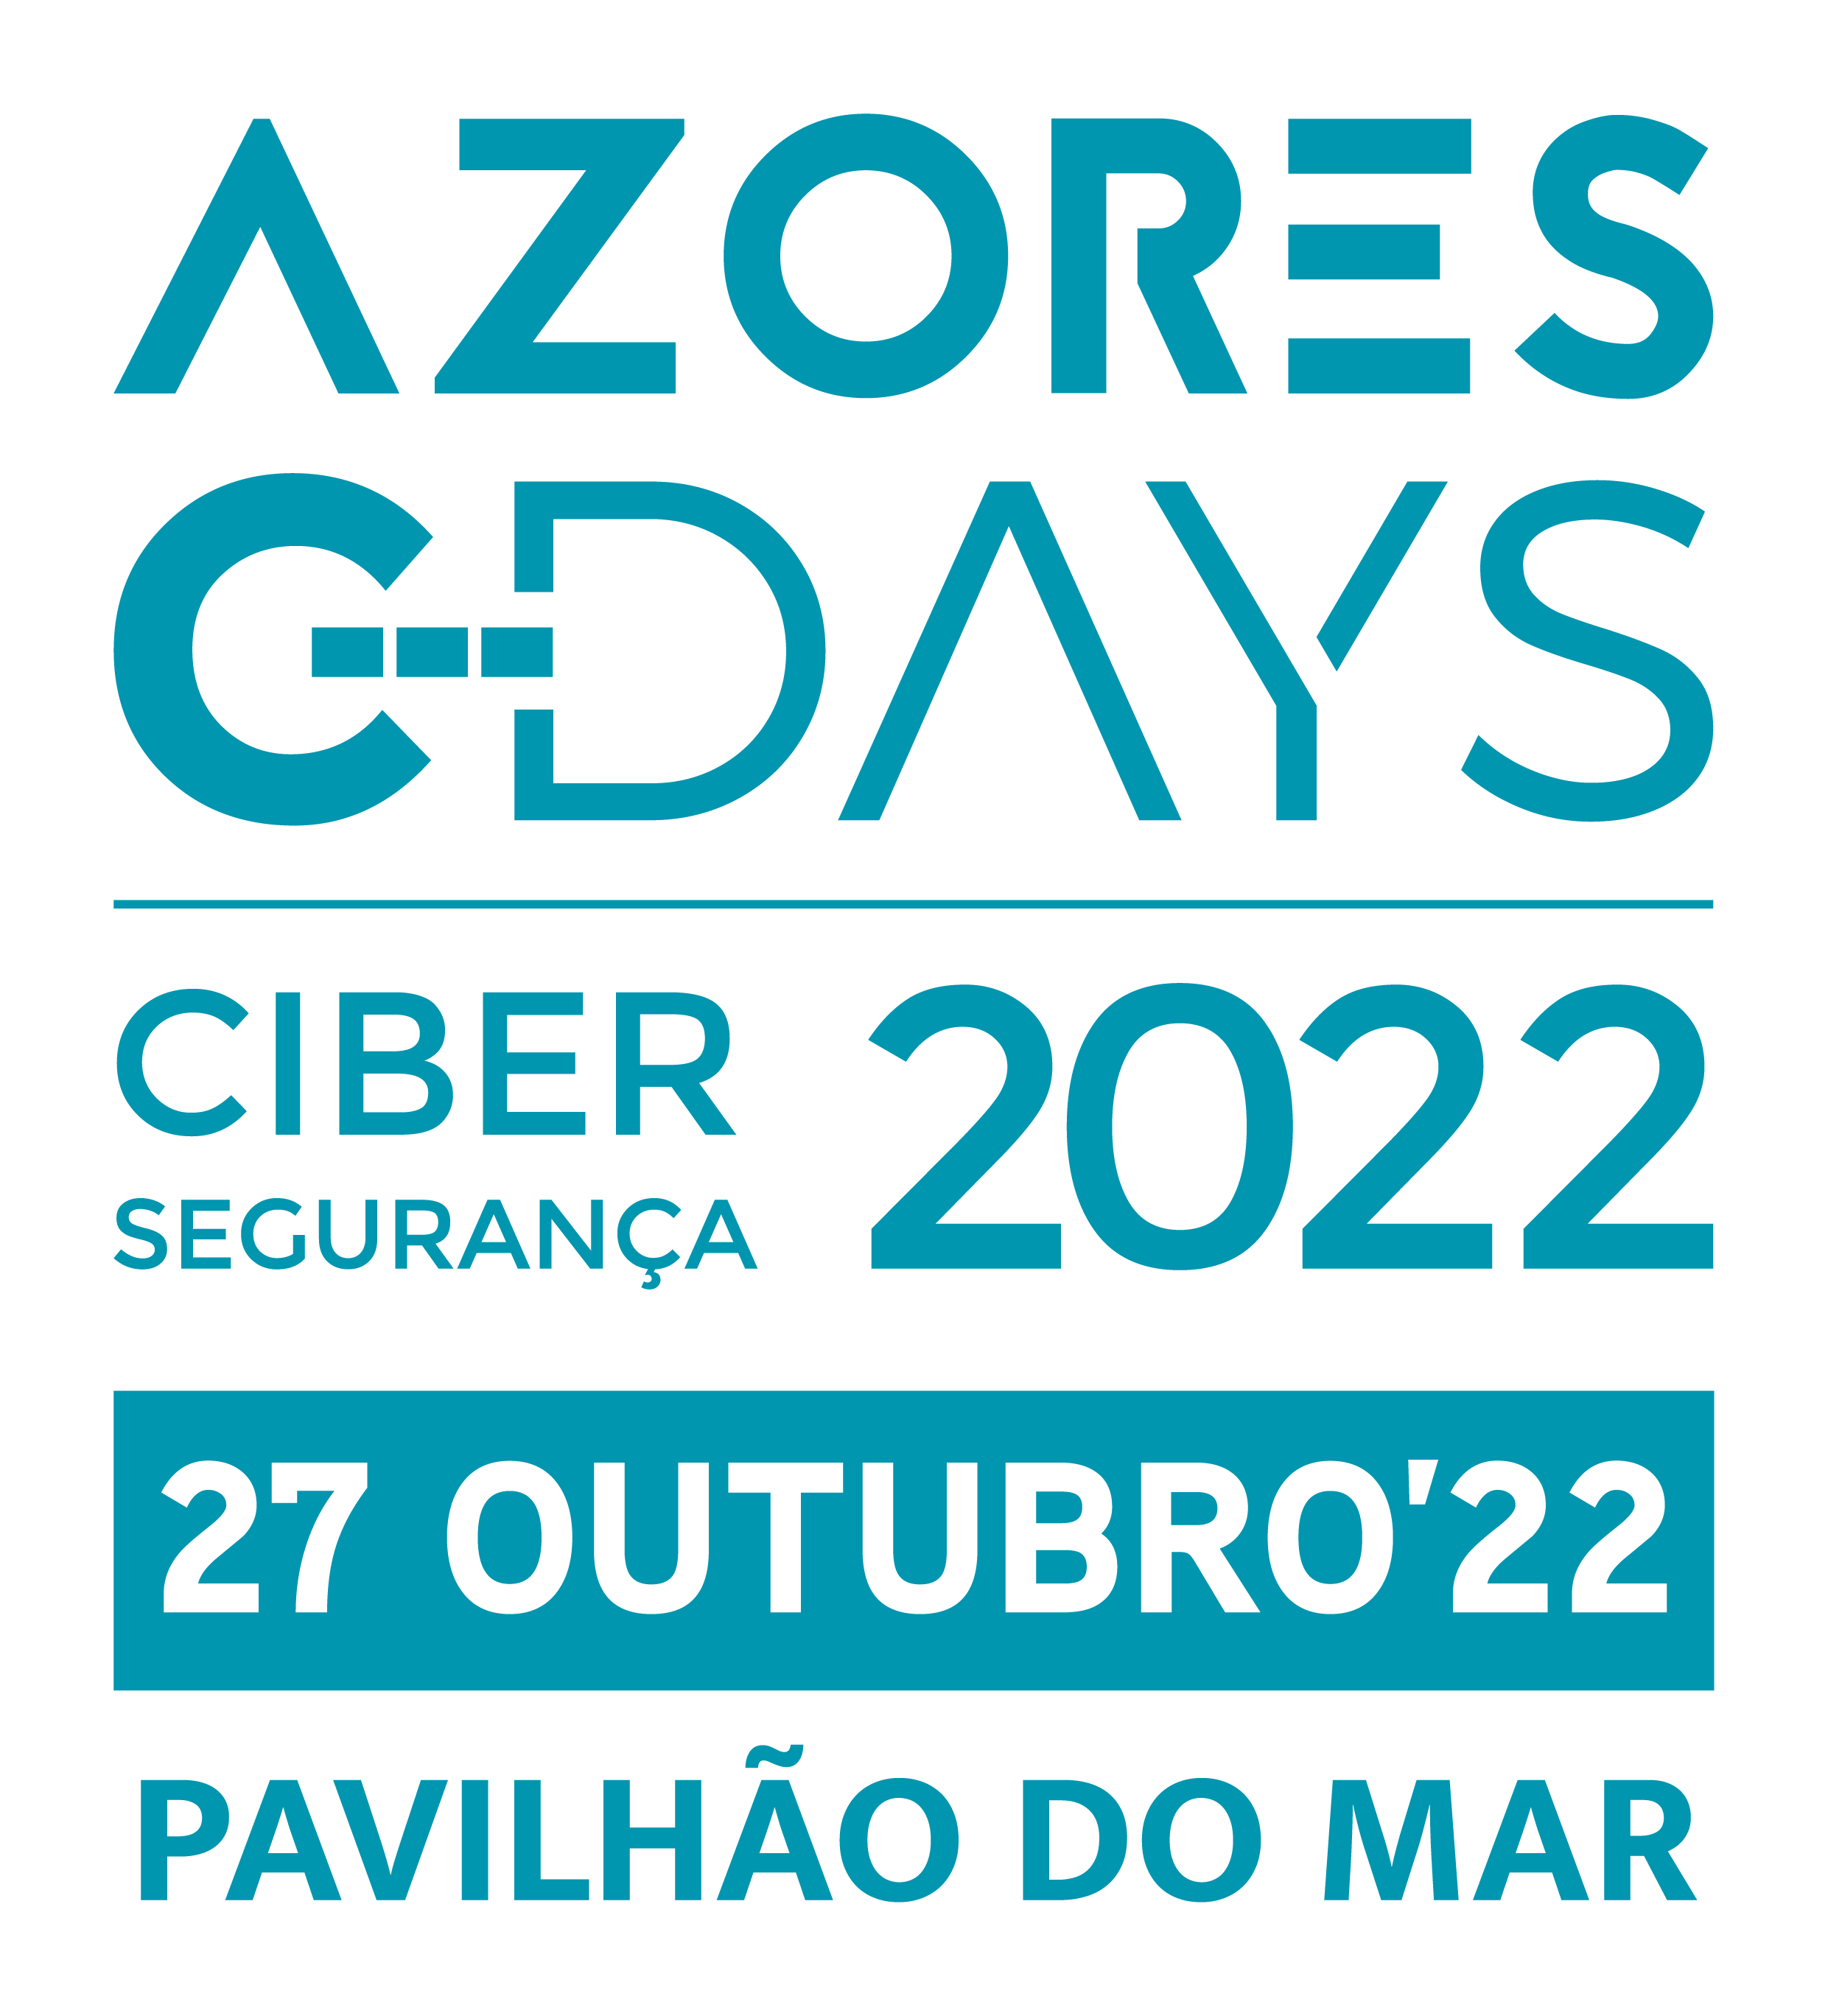 C-DAYS 2022